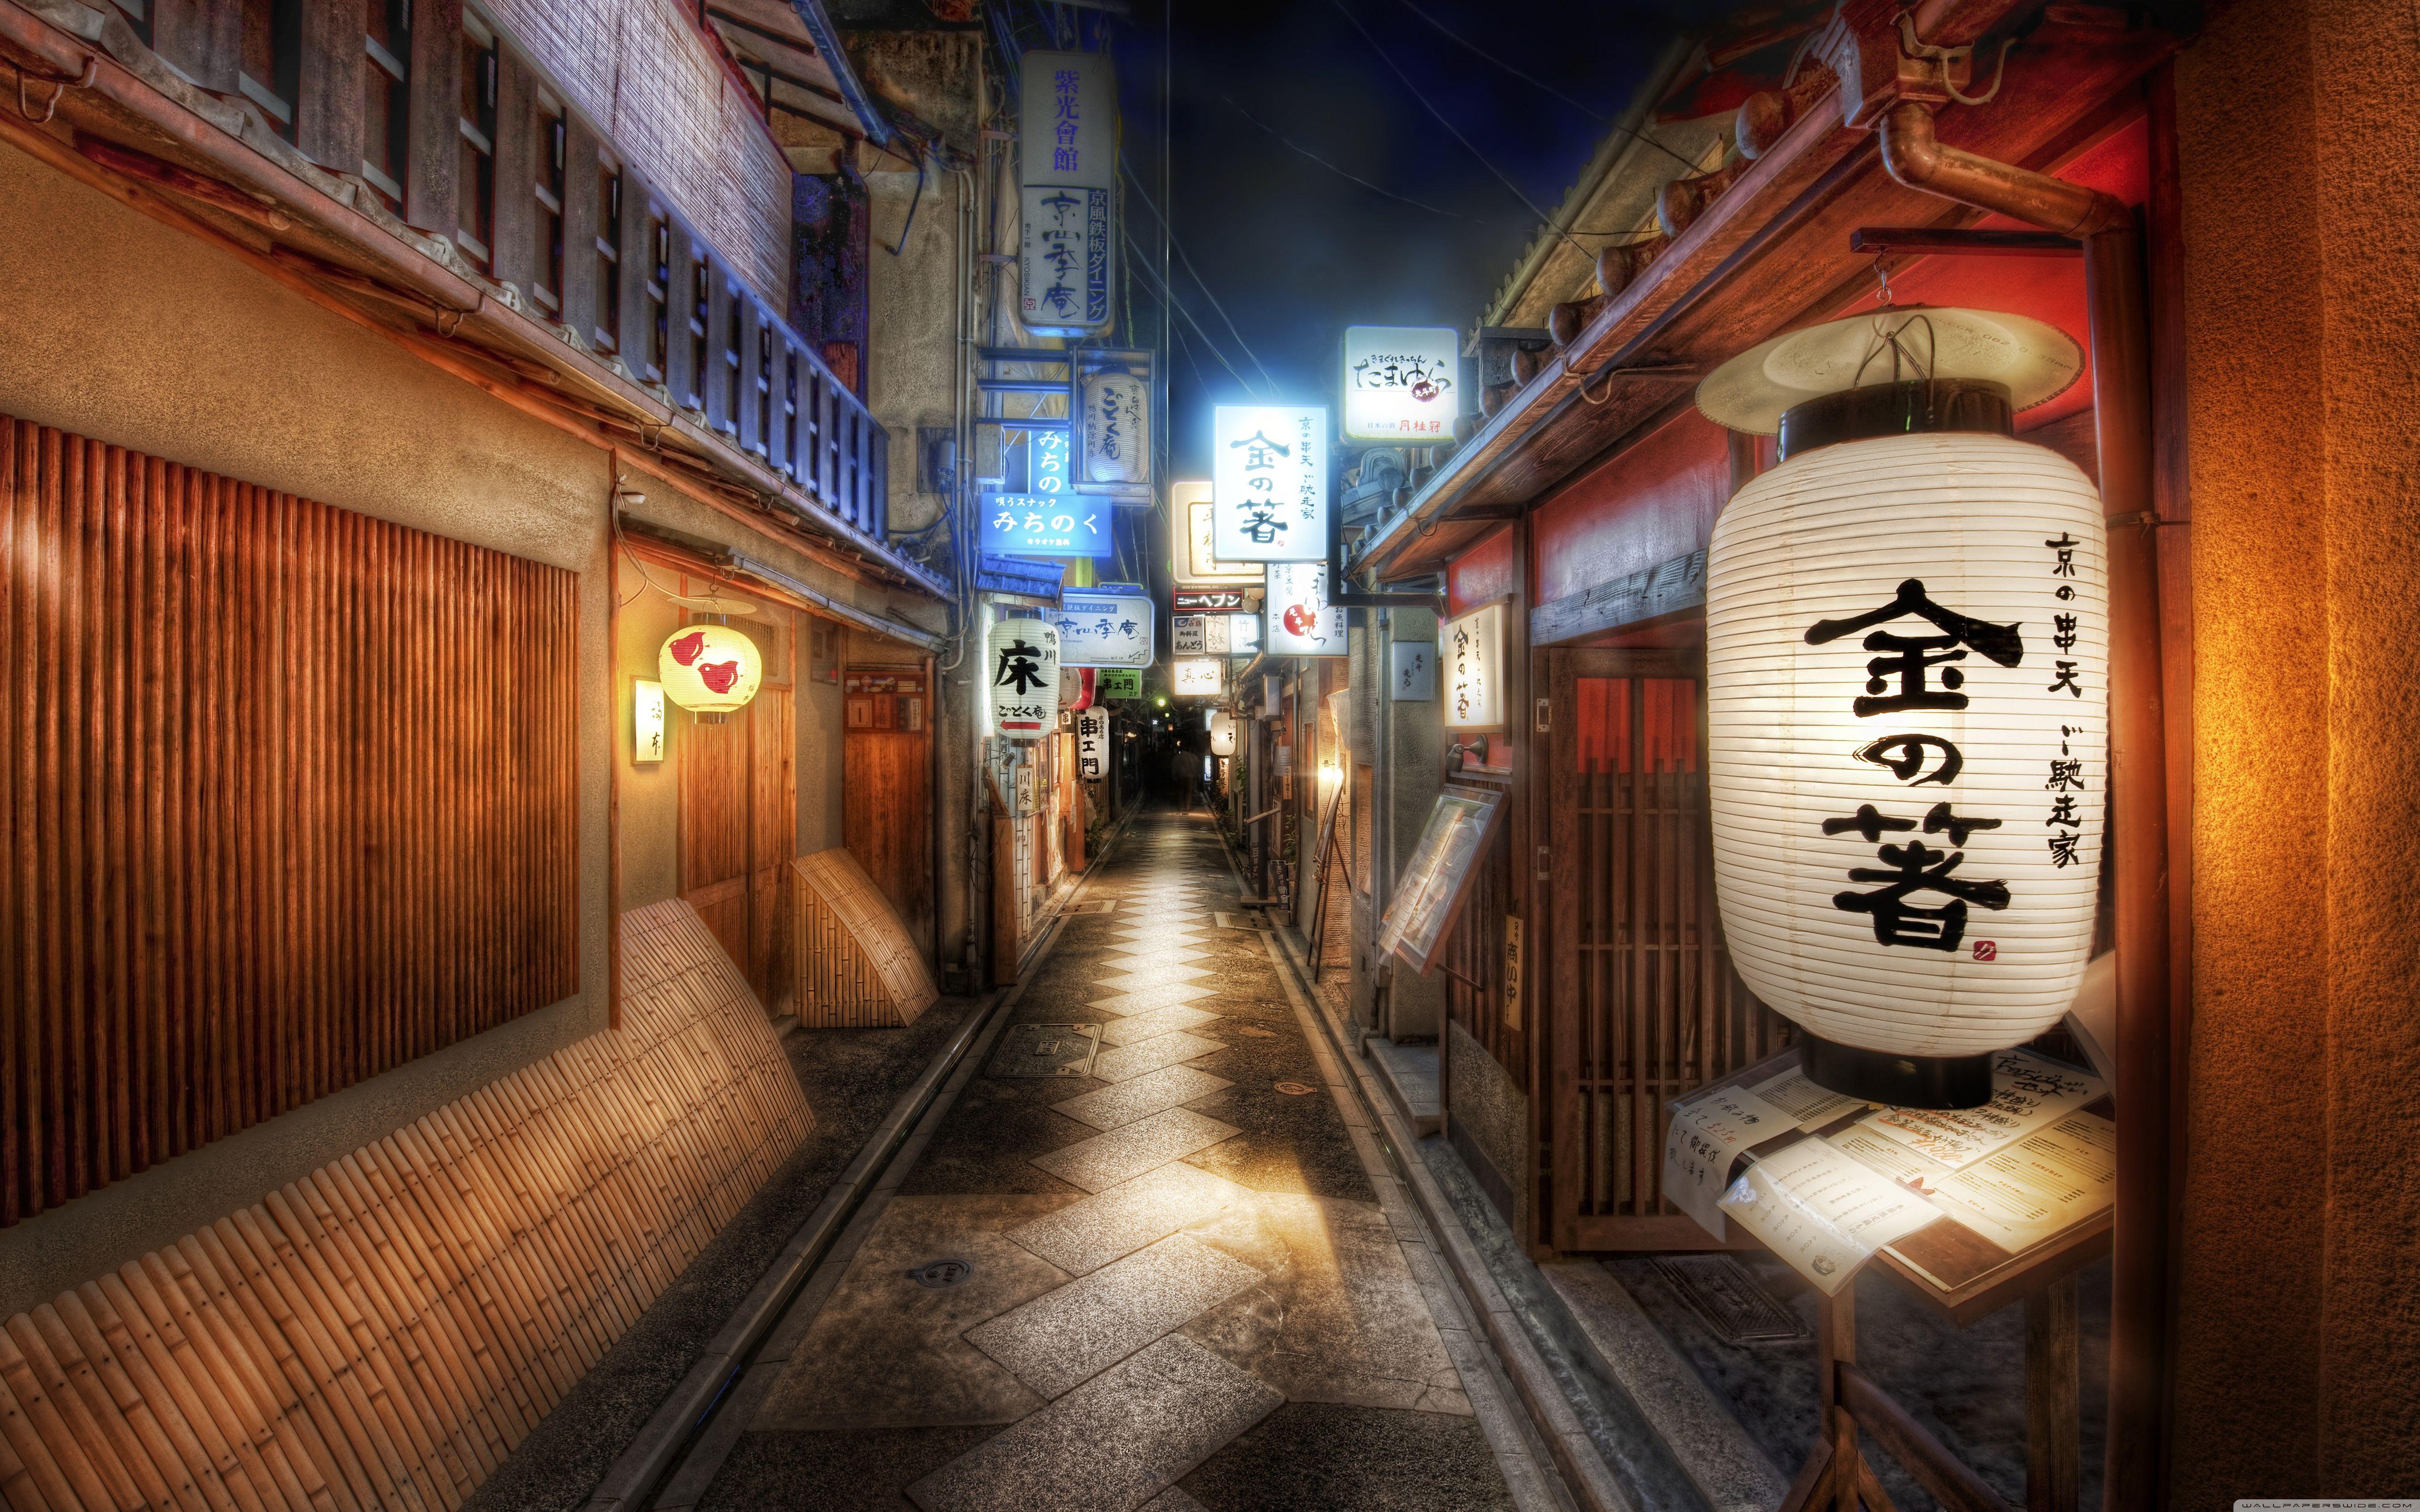 Hình nền Nhật Bản cho Ipad sẽ là lựa chọn hoàn hảo cho những ai yêu thích nền văn hóa đầy phong phú của Nhật Bản. Tận hưởng một không gian đậm chất Nhật Bản trên màn hình Ipad của bạn với những hình ảnh tuyệt đẹp, đầy màu sắc và ý nghĩa.